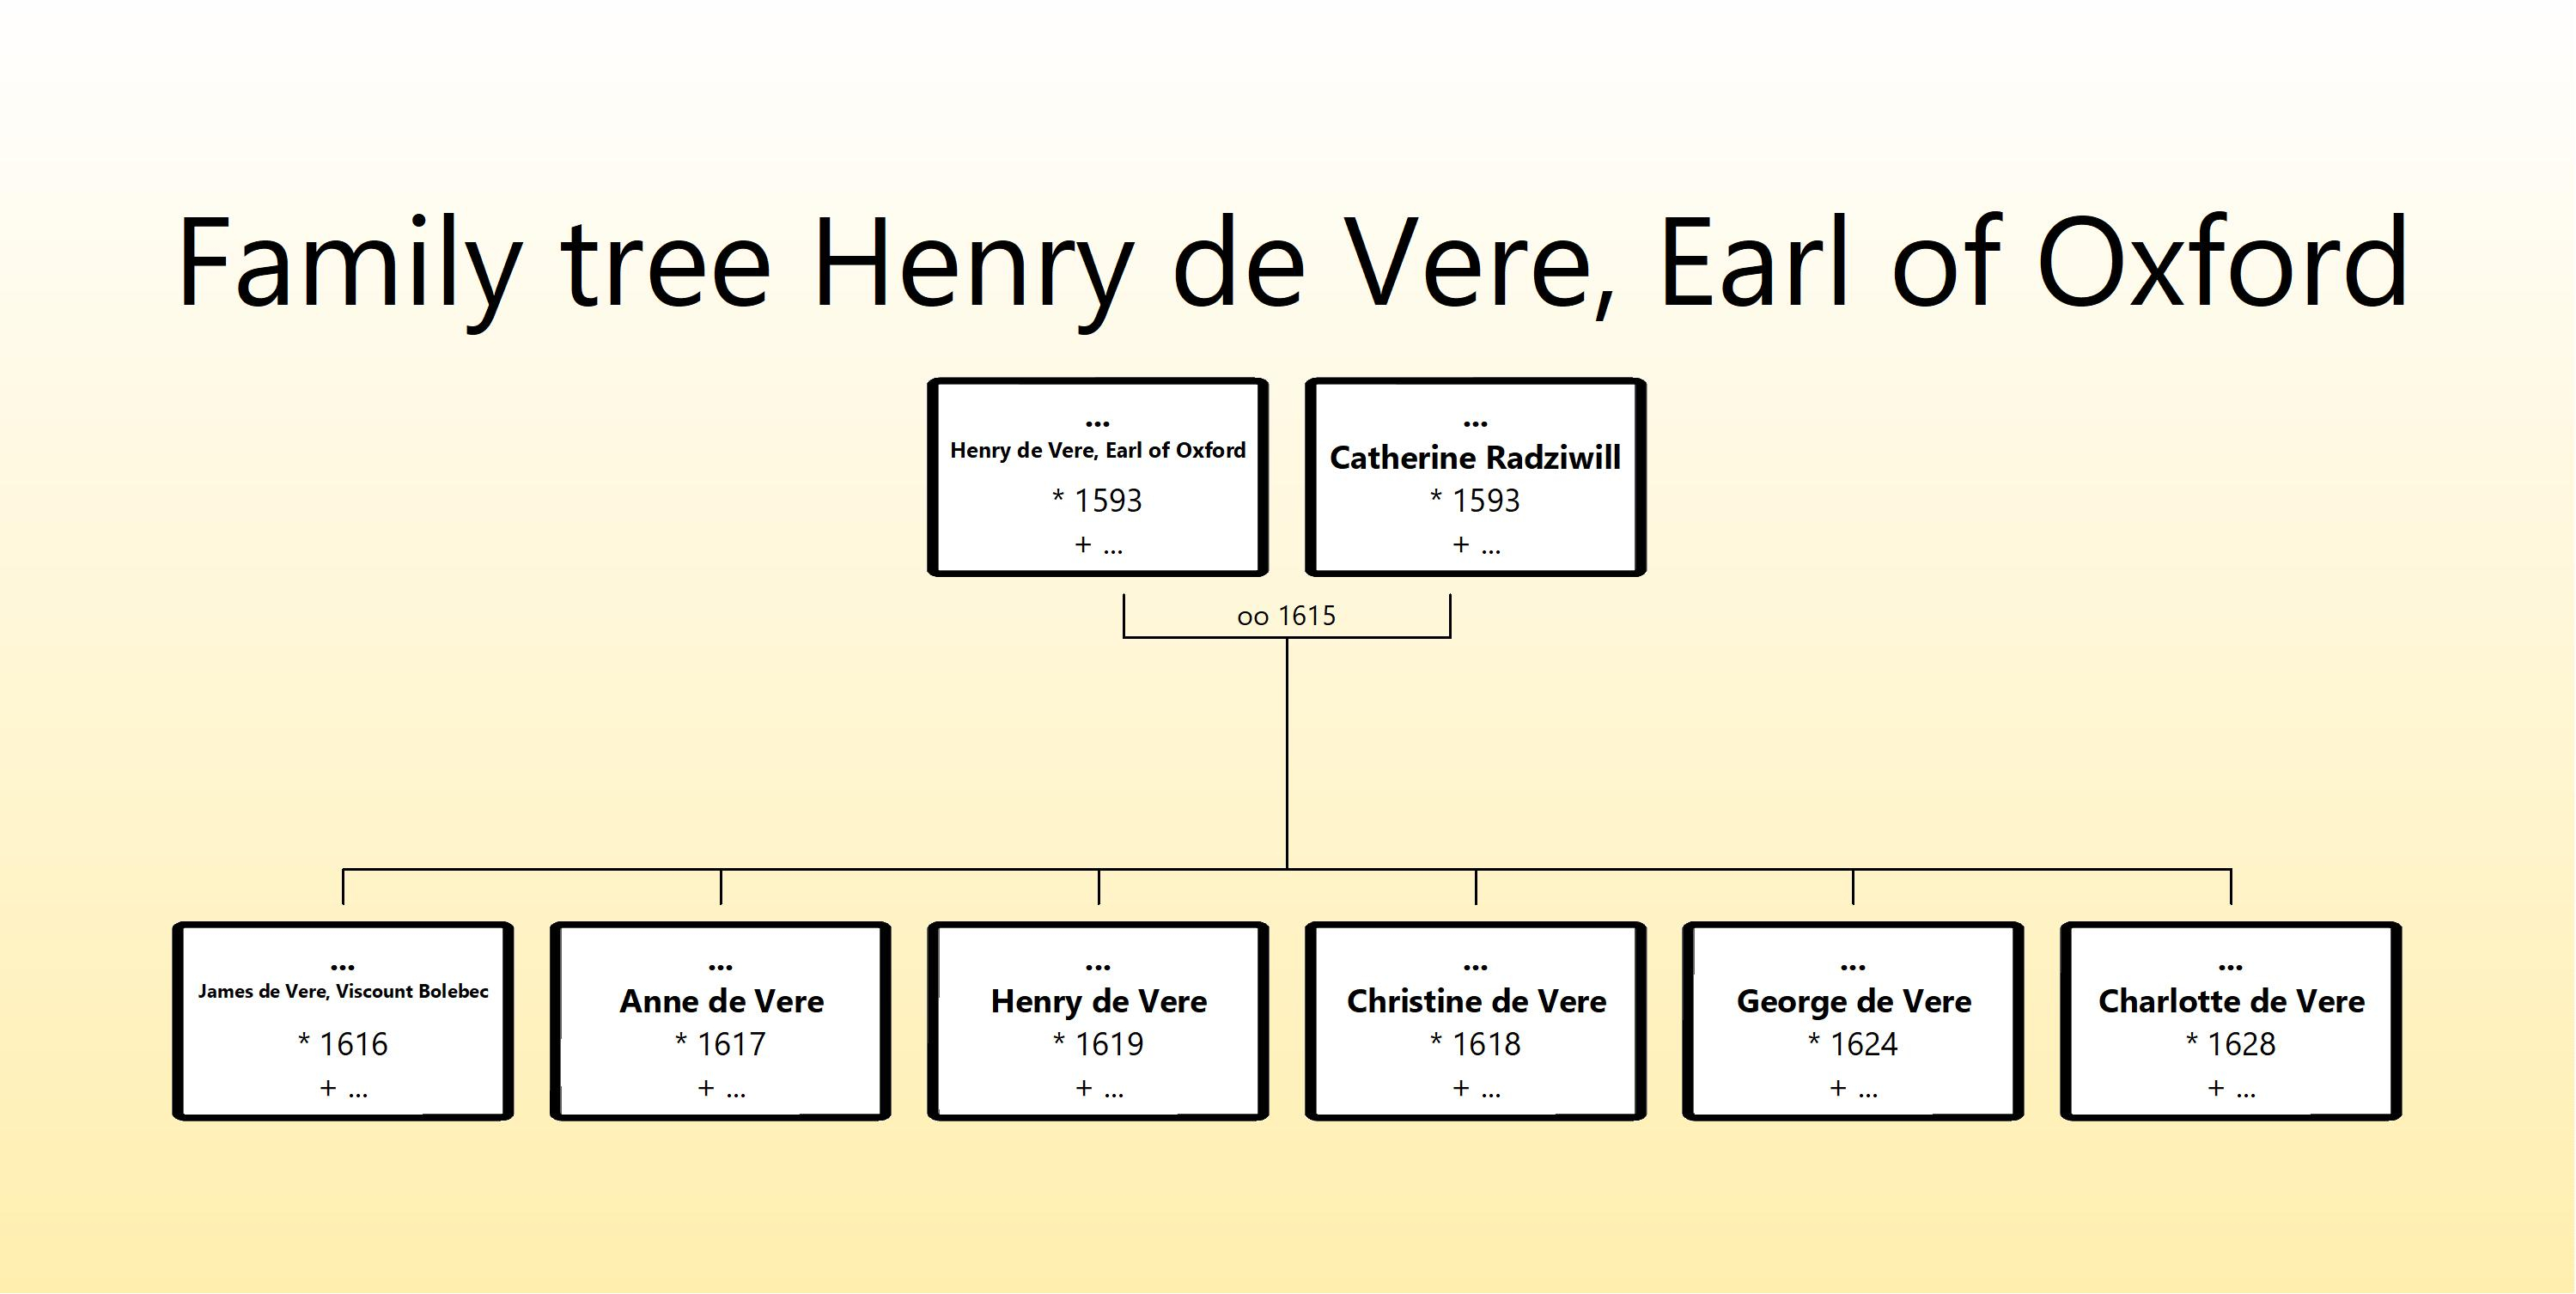 Family tree Henry de Vere, Earl of Oxford.jpg